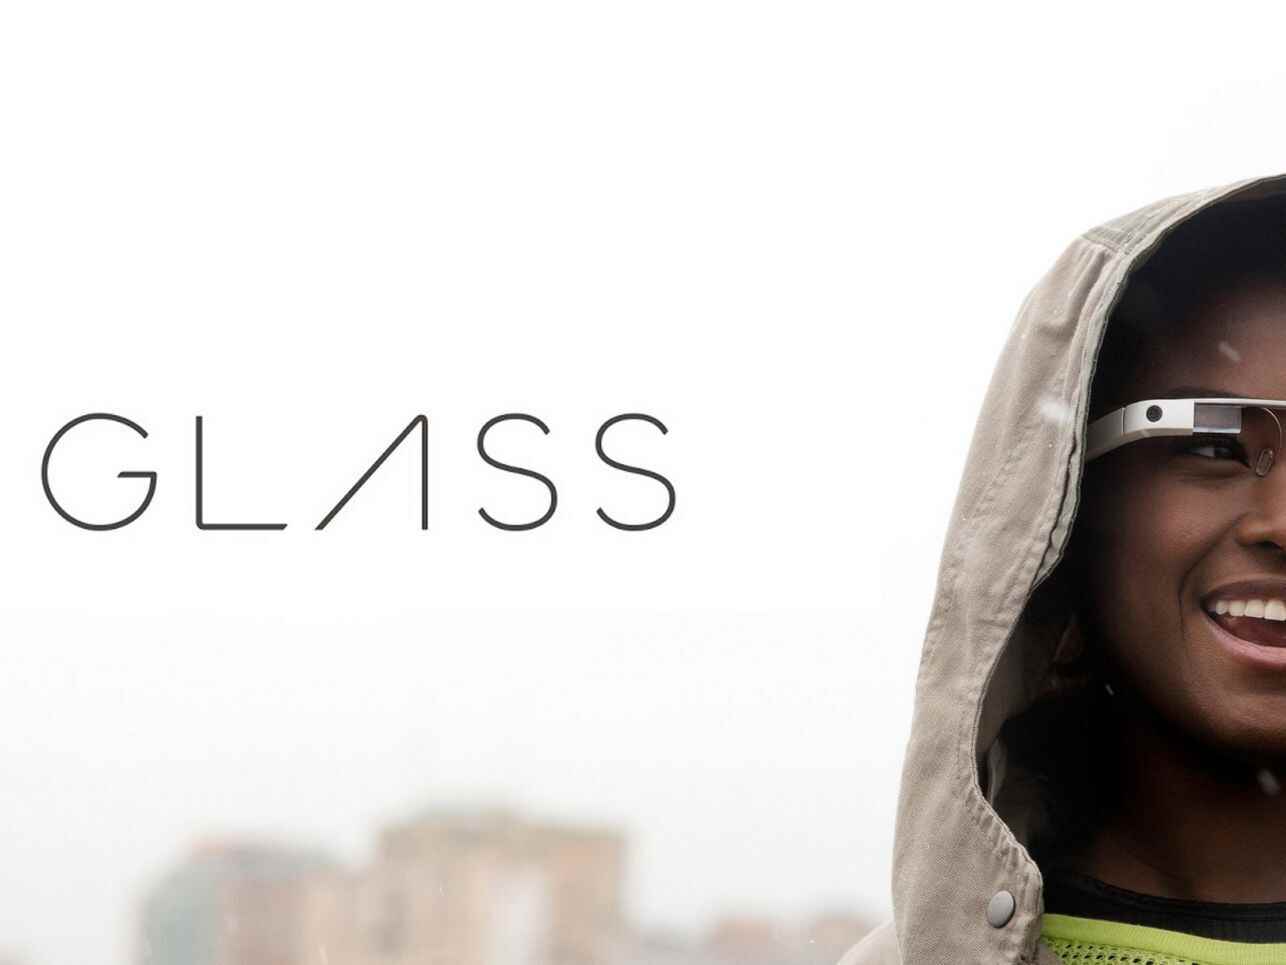 Google Glass erlebte mehrere Iterationen, bevor das Projekt verschoben wurde, um es zu verbessern.  - Die nächste AR-Brille von Google kann Ringe und Armbänder als Controller verwenden